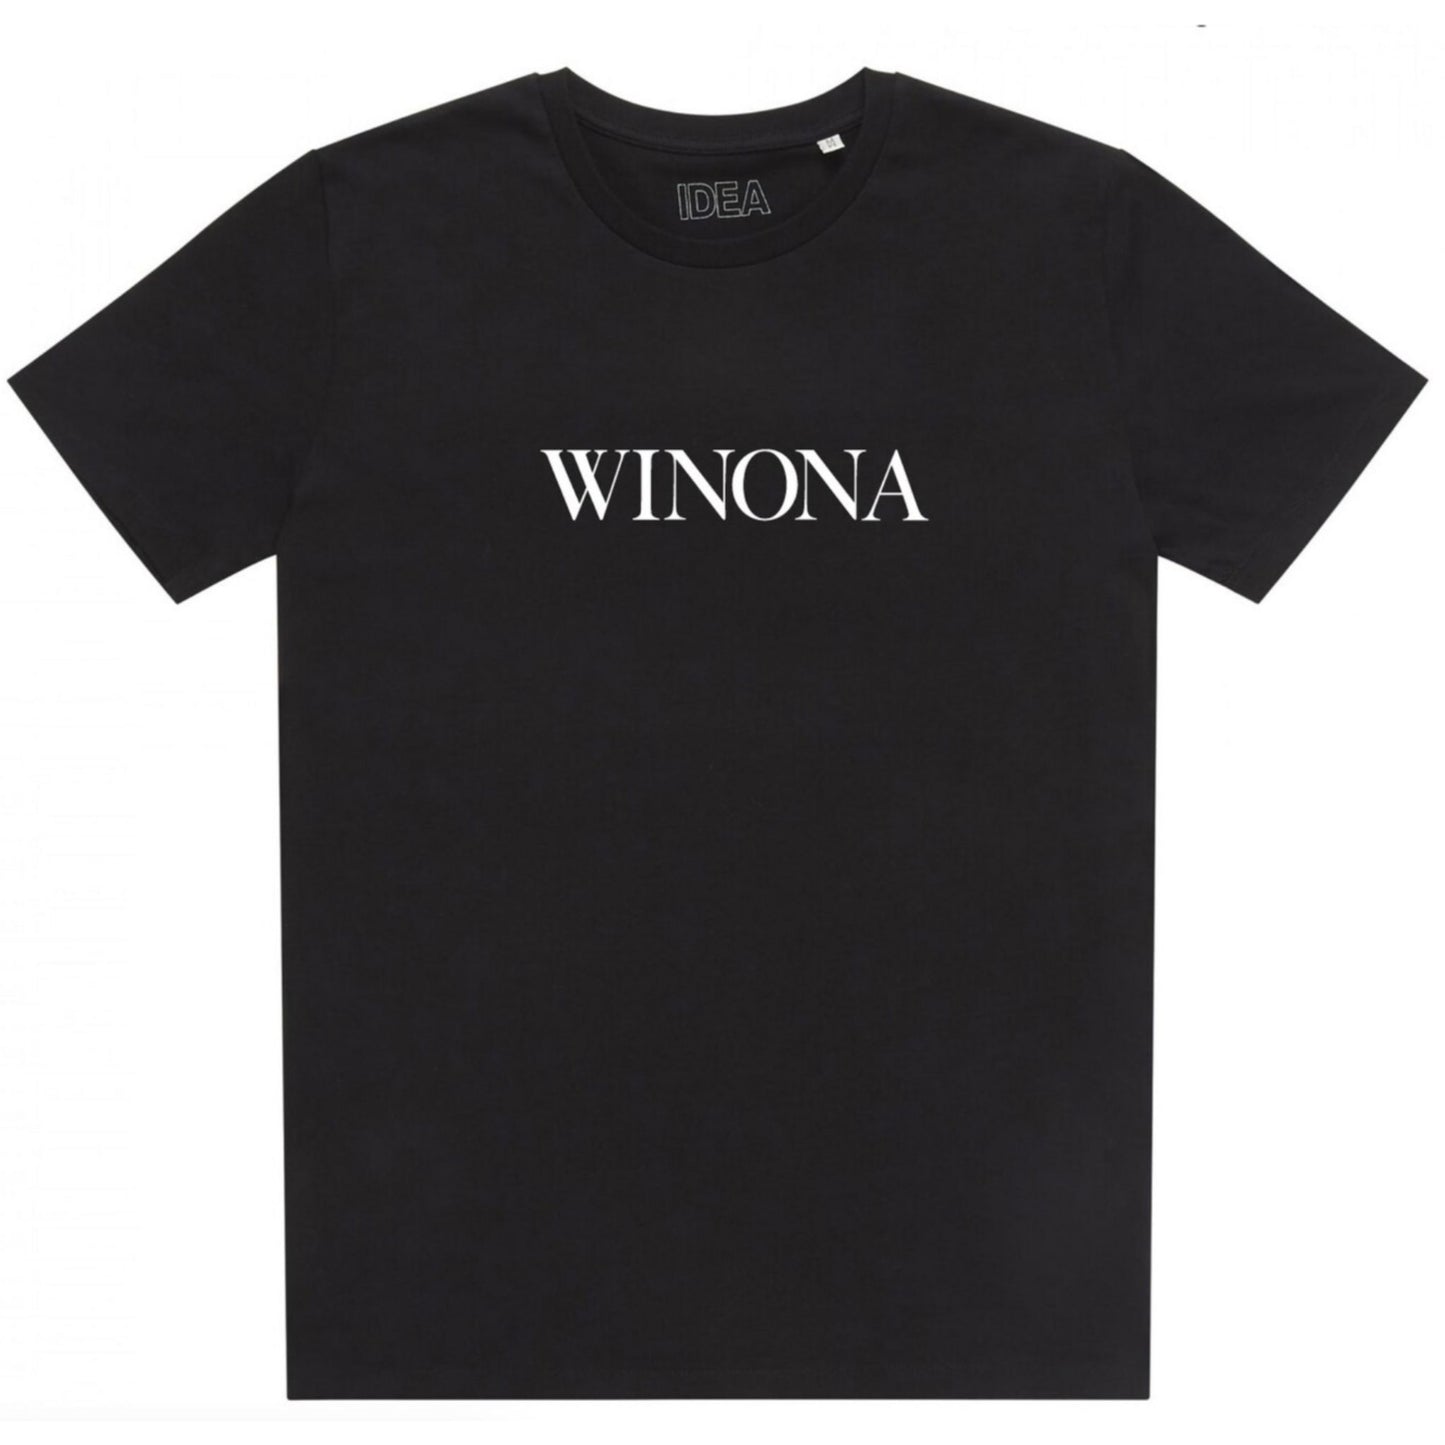 IDEA - Winona T-Shirt